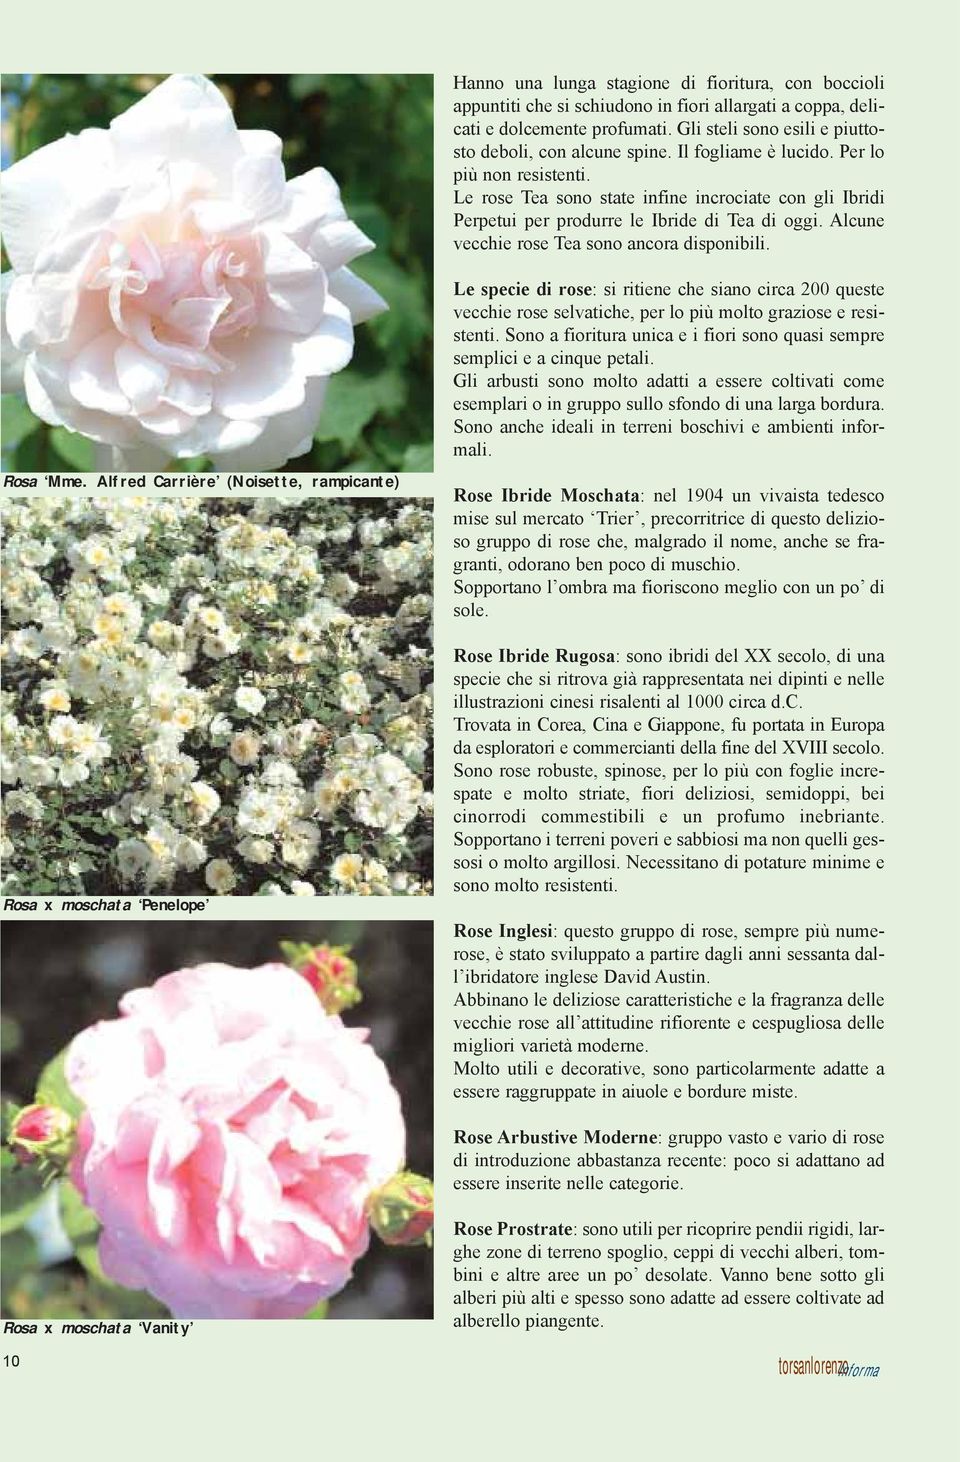 Alcune vecchie rose Tea sono ancora disponibili. Le specie di rose: si ritiene che siano circa 200 queste vecchie rose selvatiche, per lo più molto graziose e resistenti.